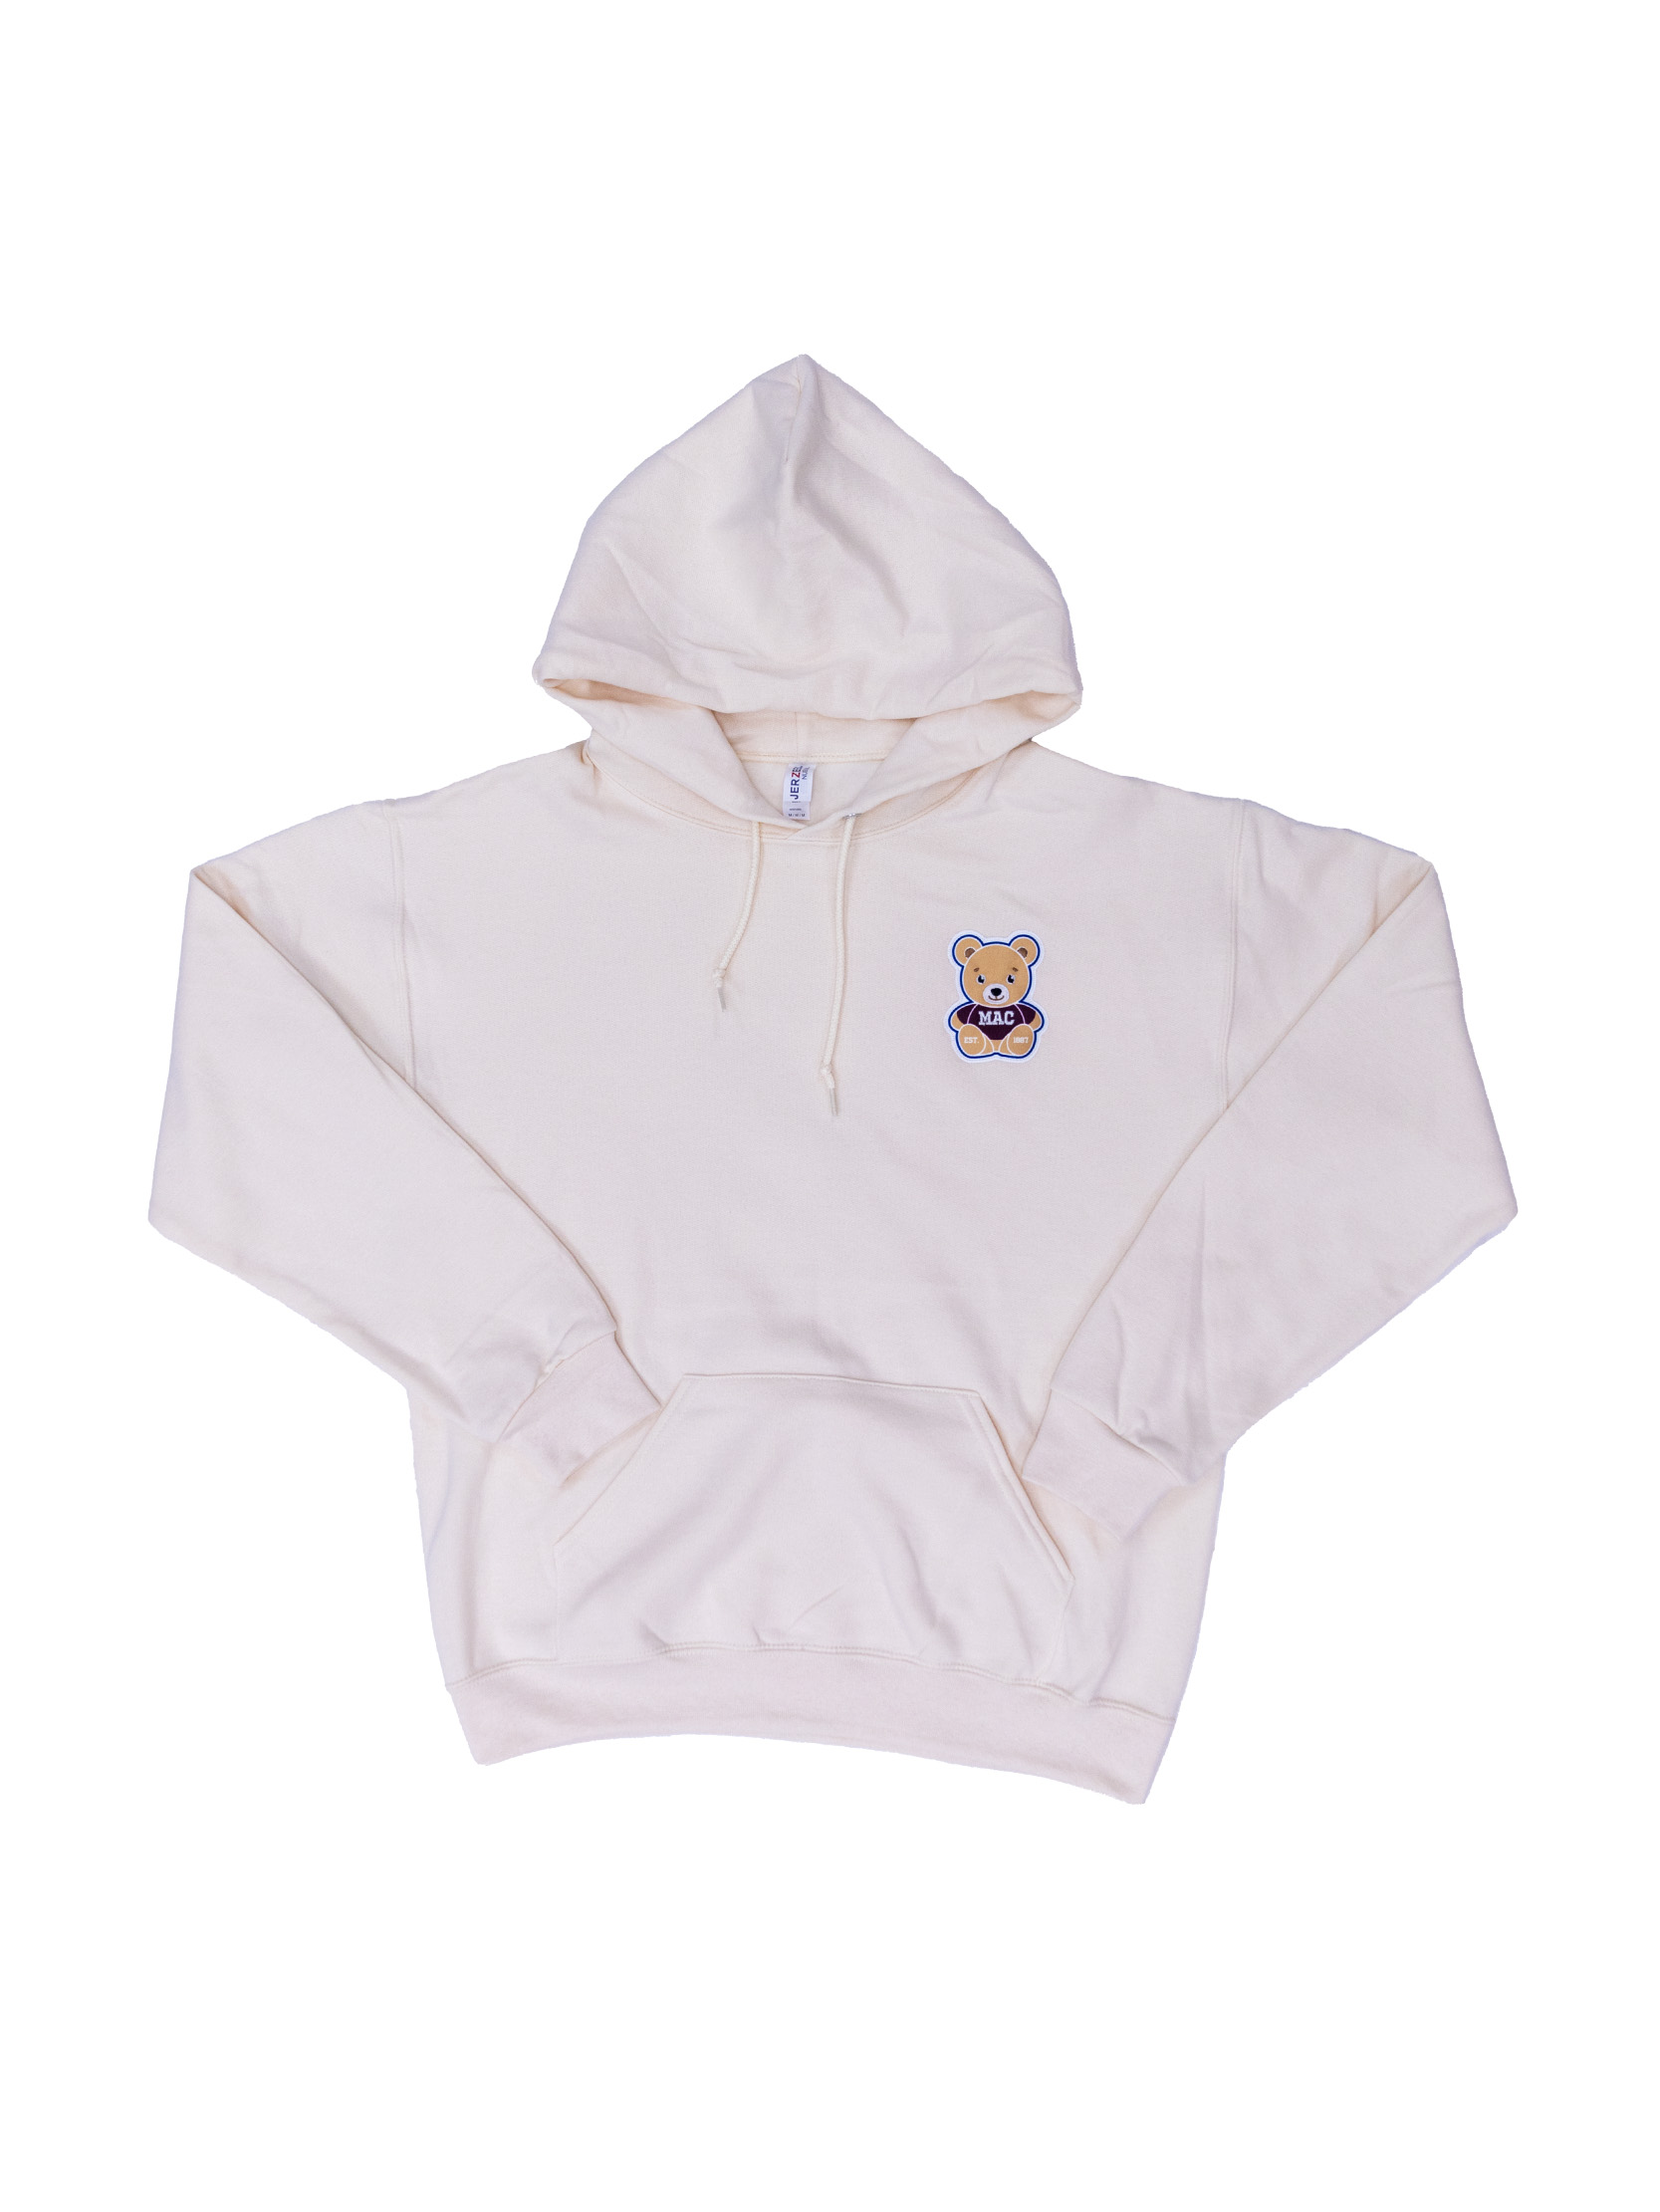 Mac Bear Hooded Sweatshirt - #7971100